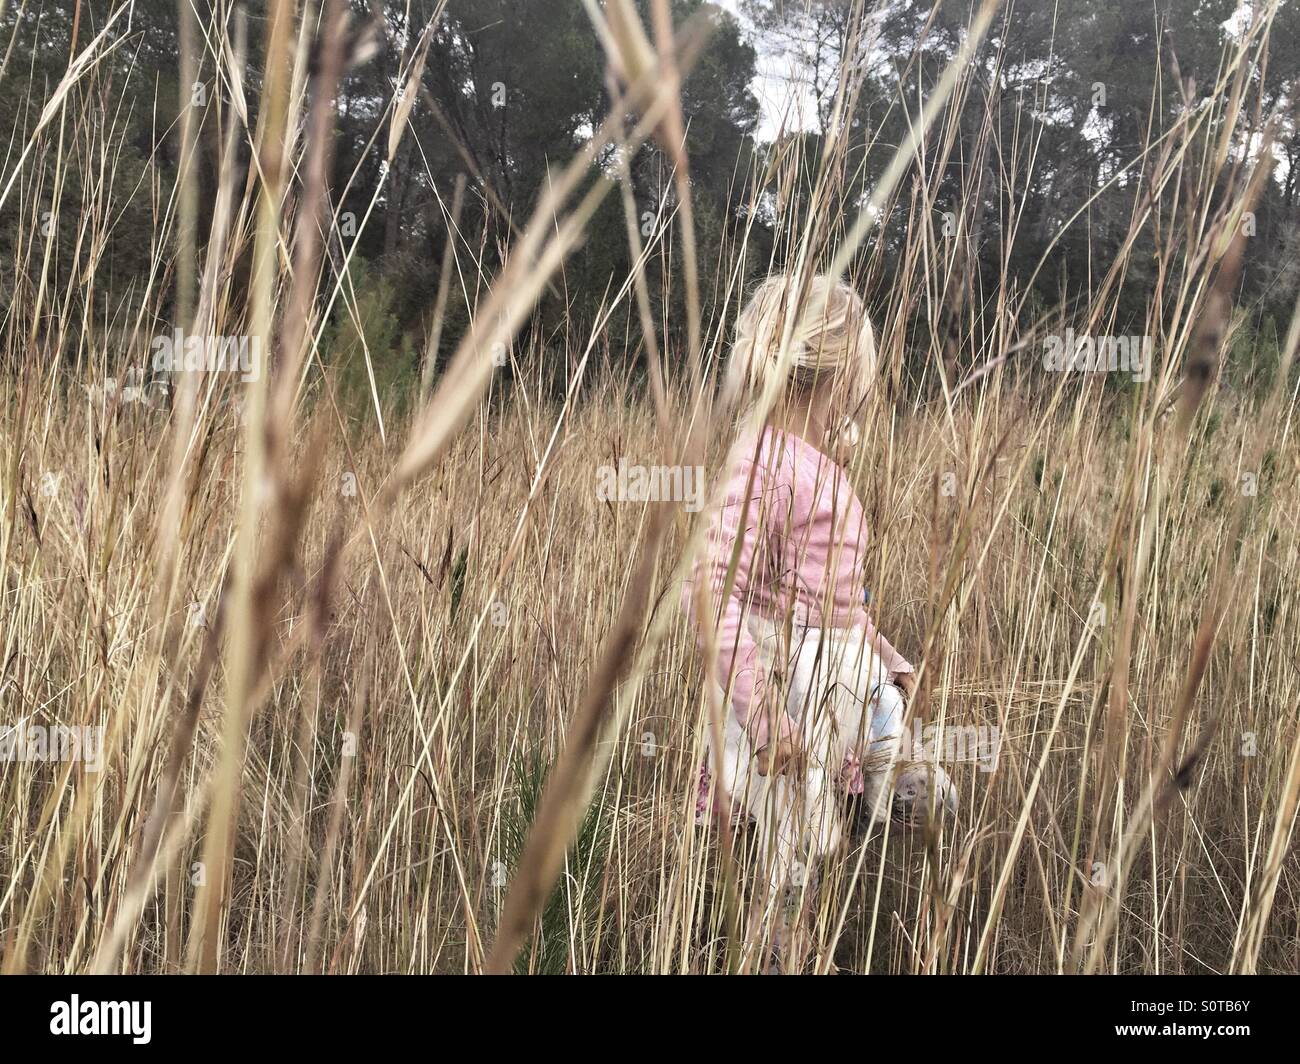 Girl walking in a field Stock Photo